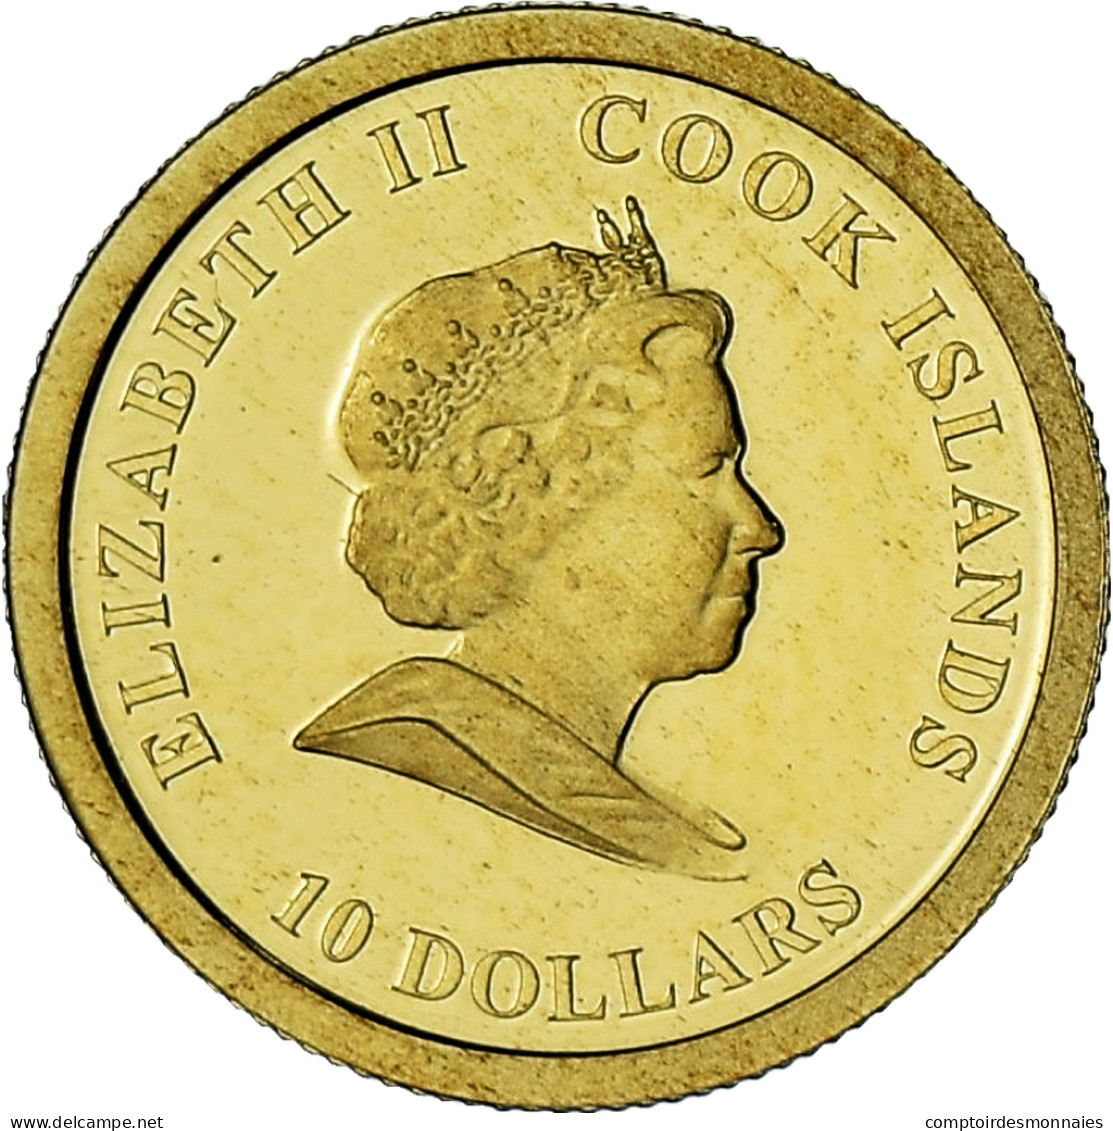 Îles Cook, Elizabeth II, James Cook, 10 Dollars, 2008, BE, FDC, Or - Cookeilanden